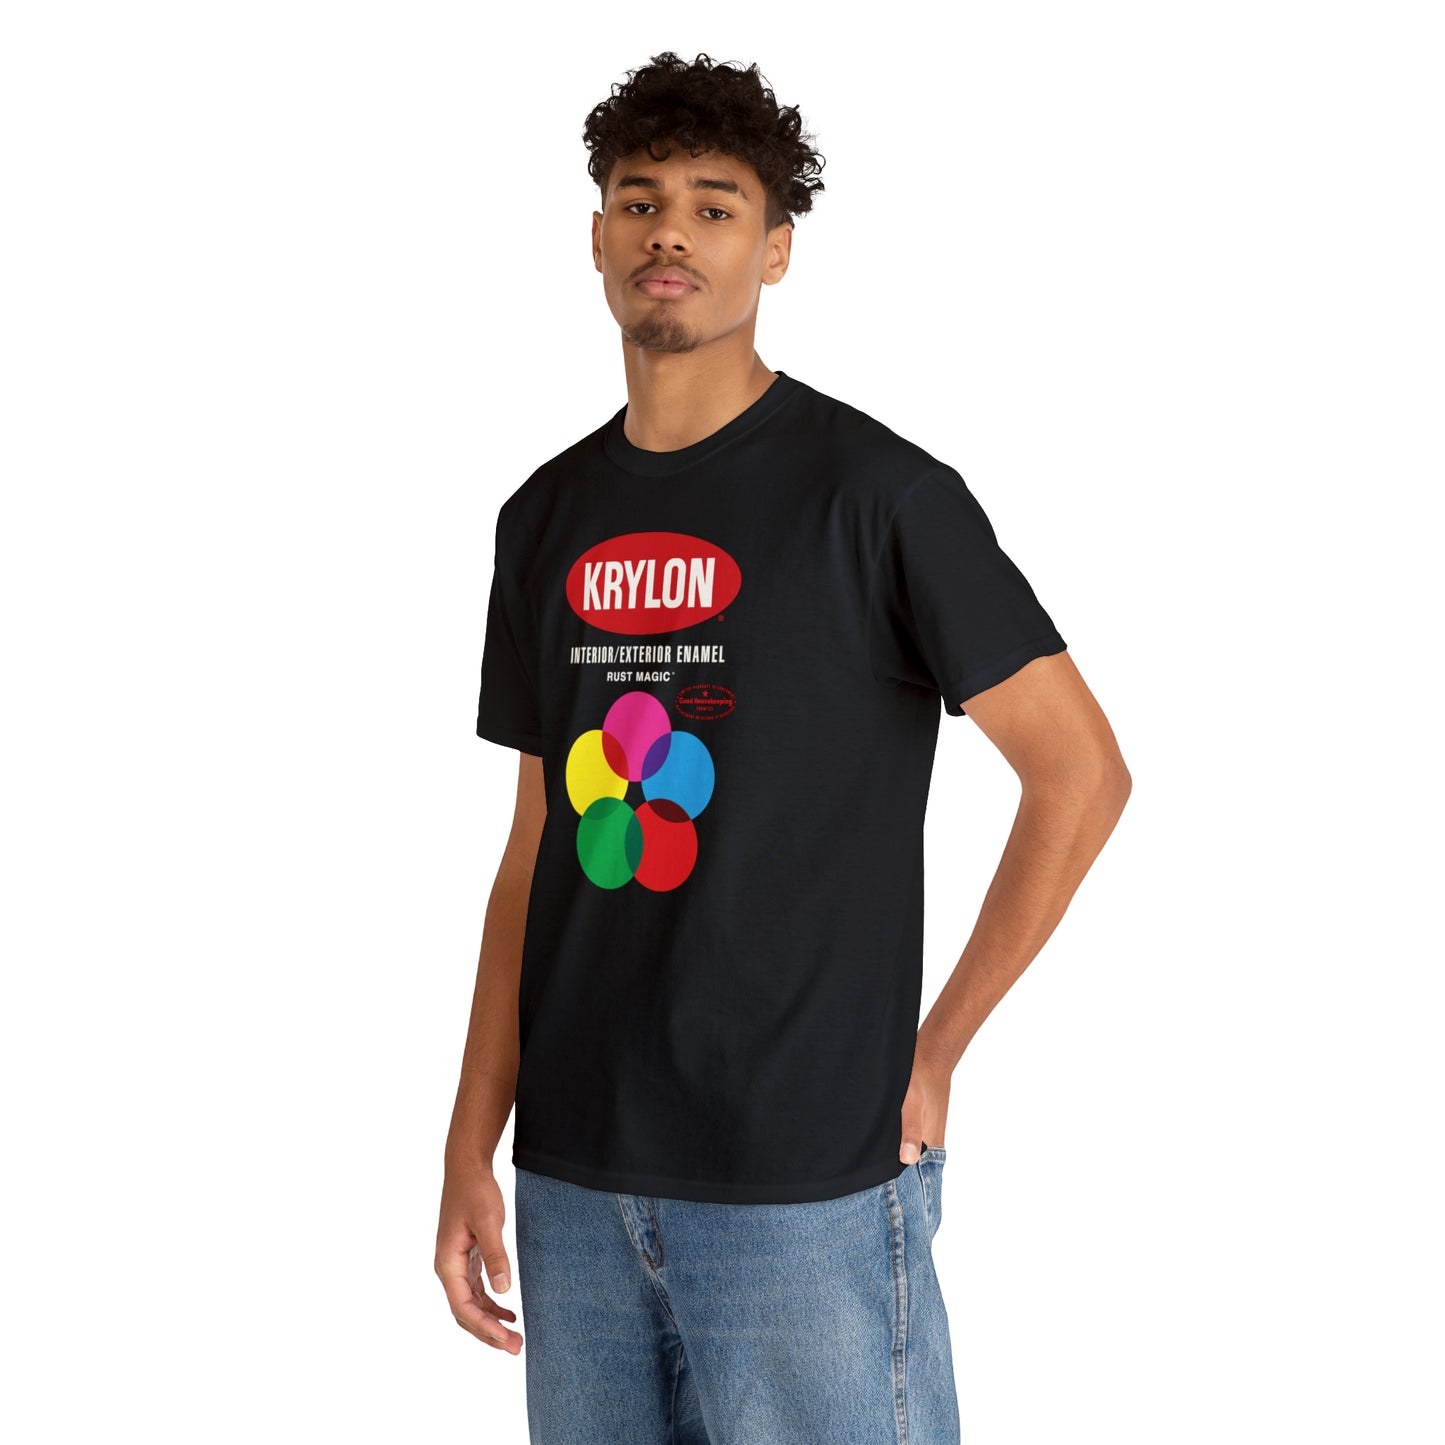 Krylon T-Shirt